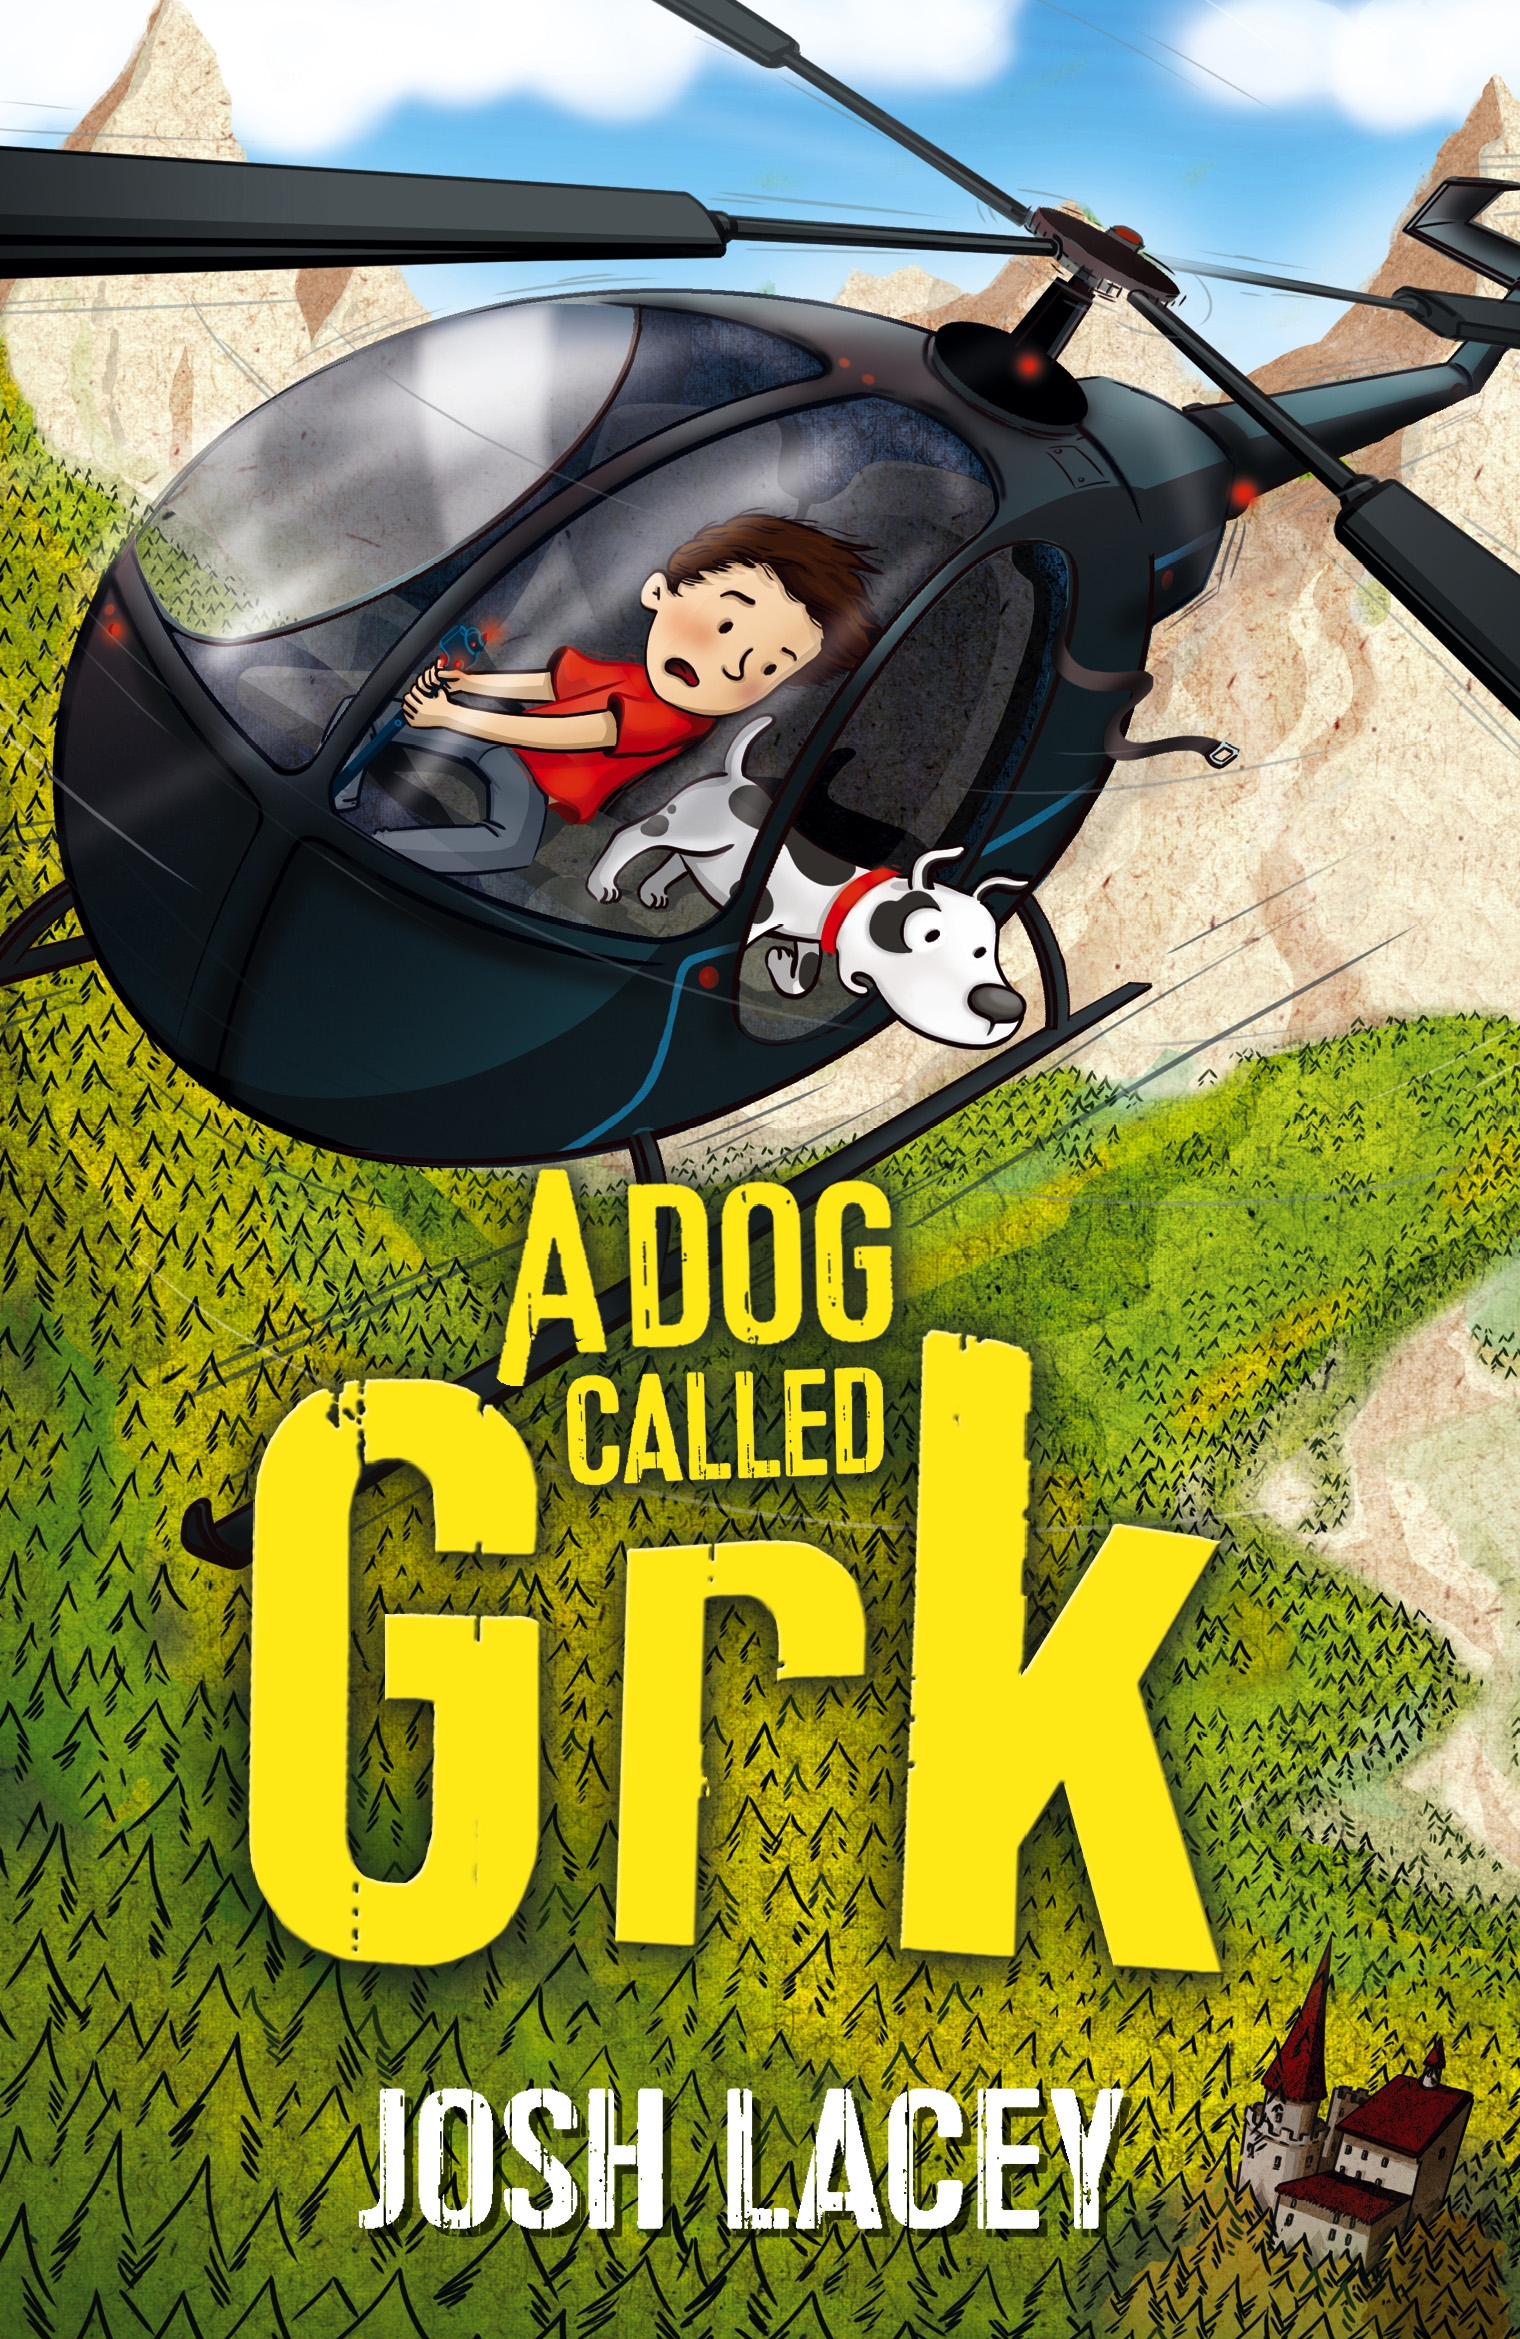 A Dog Called Grk